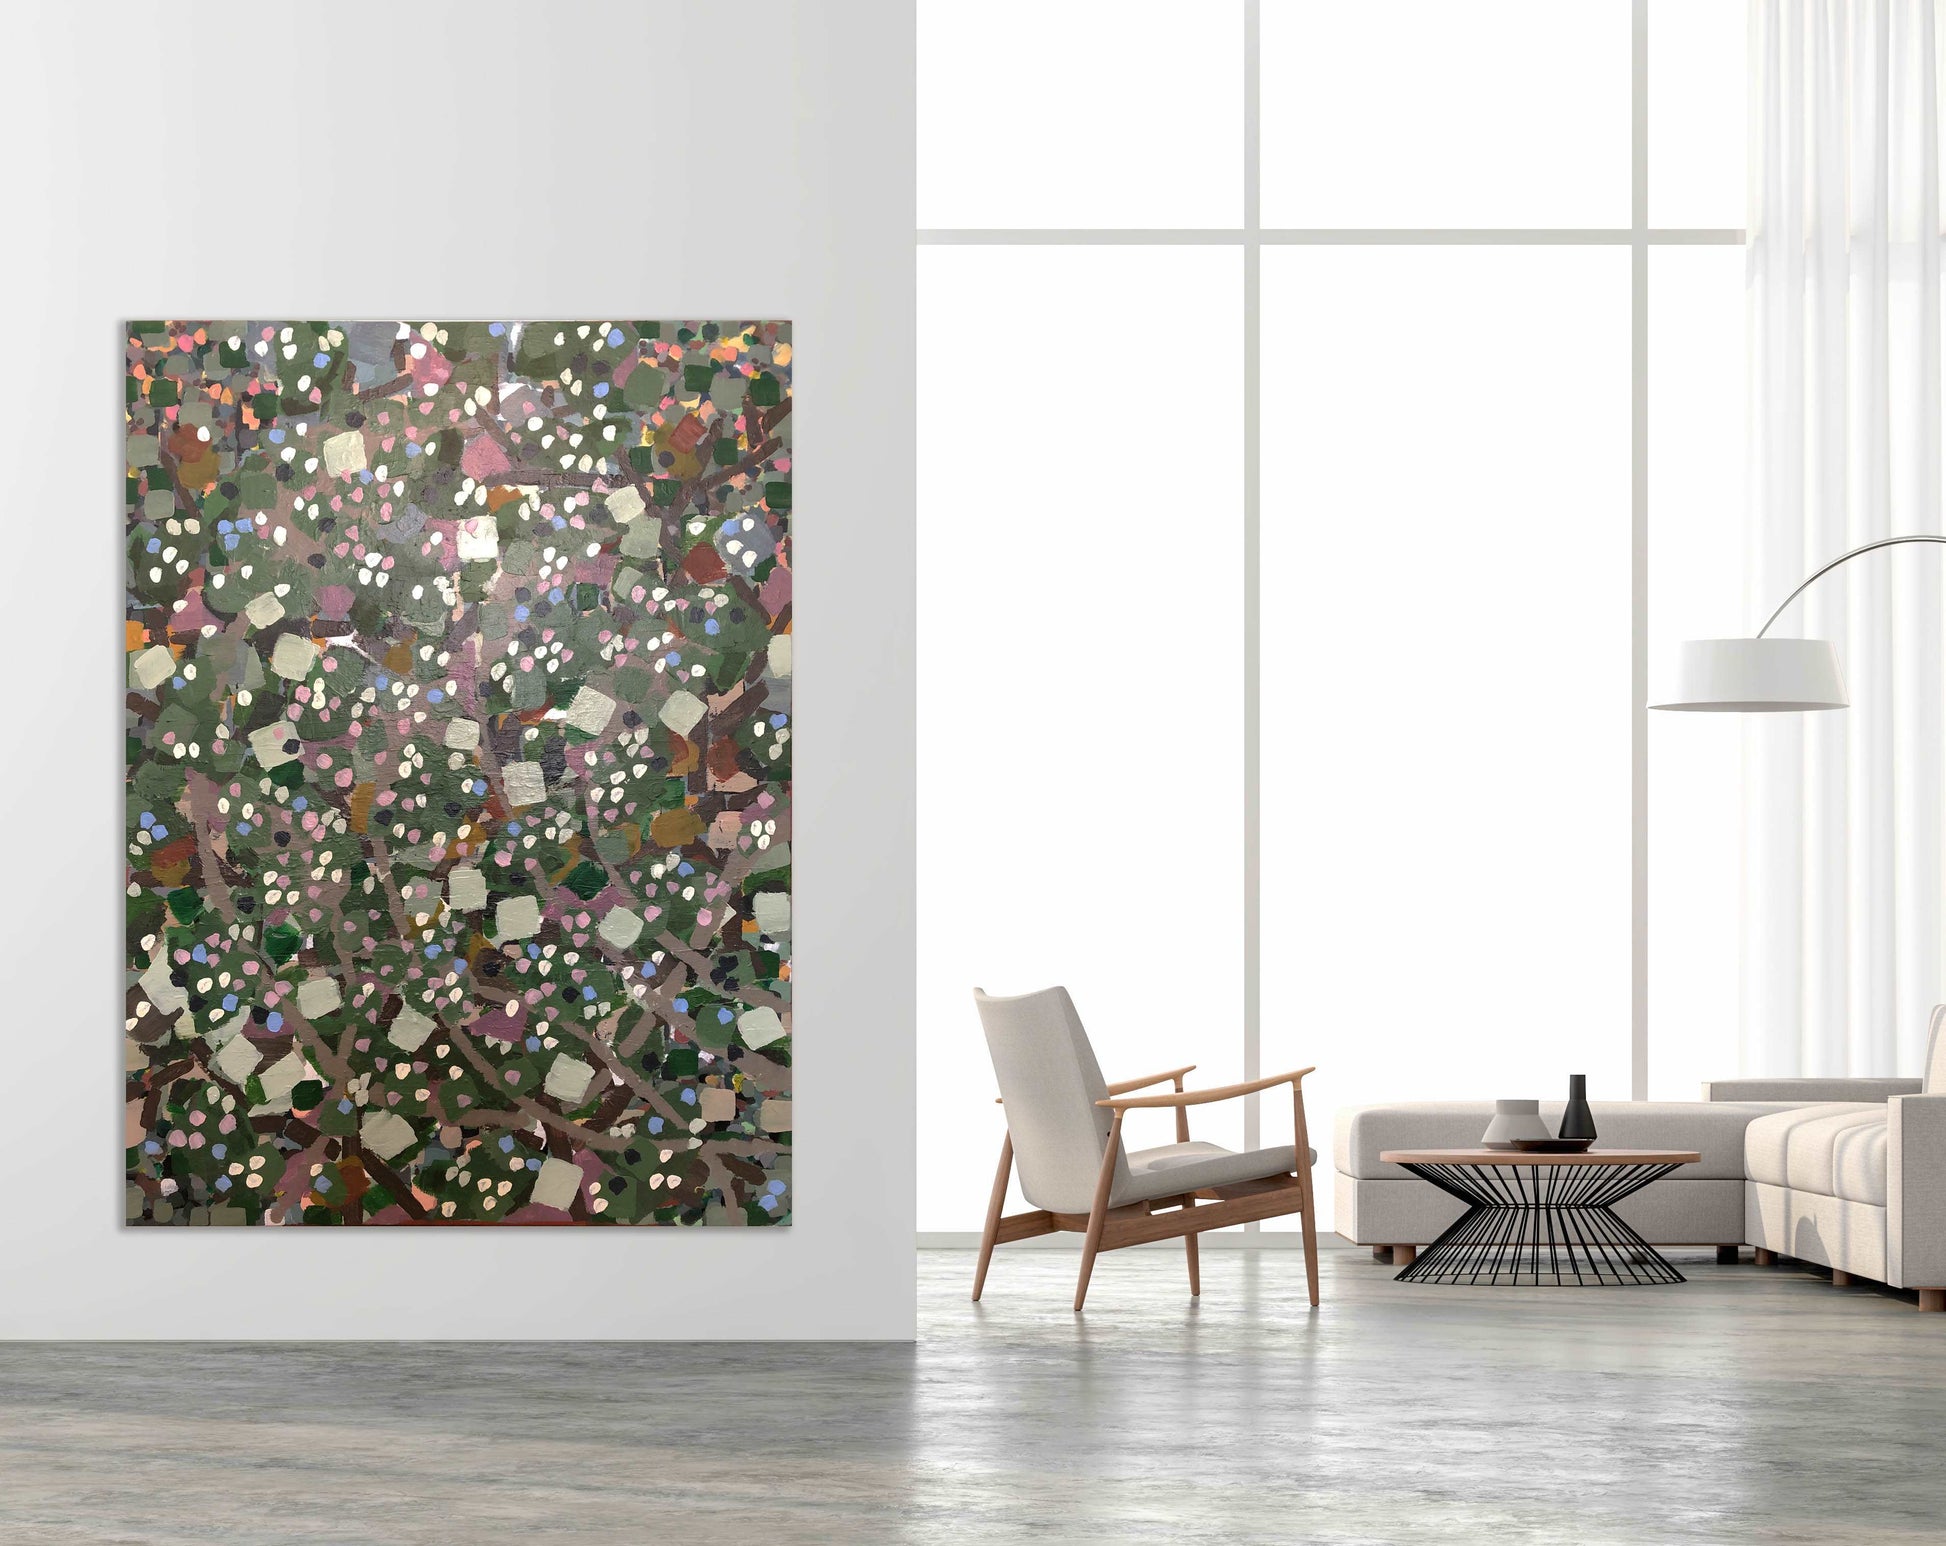 Composition 100A (2021) - 122 x 91cm, acrylic on canvas - Decopica